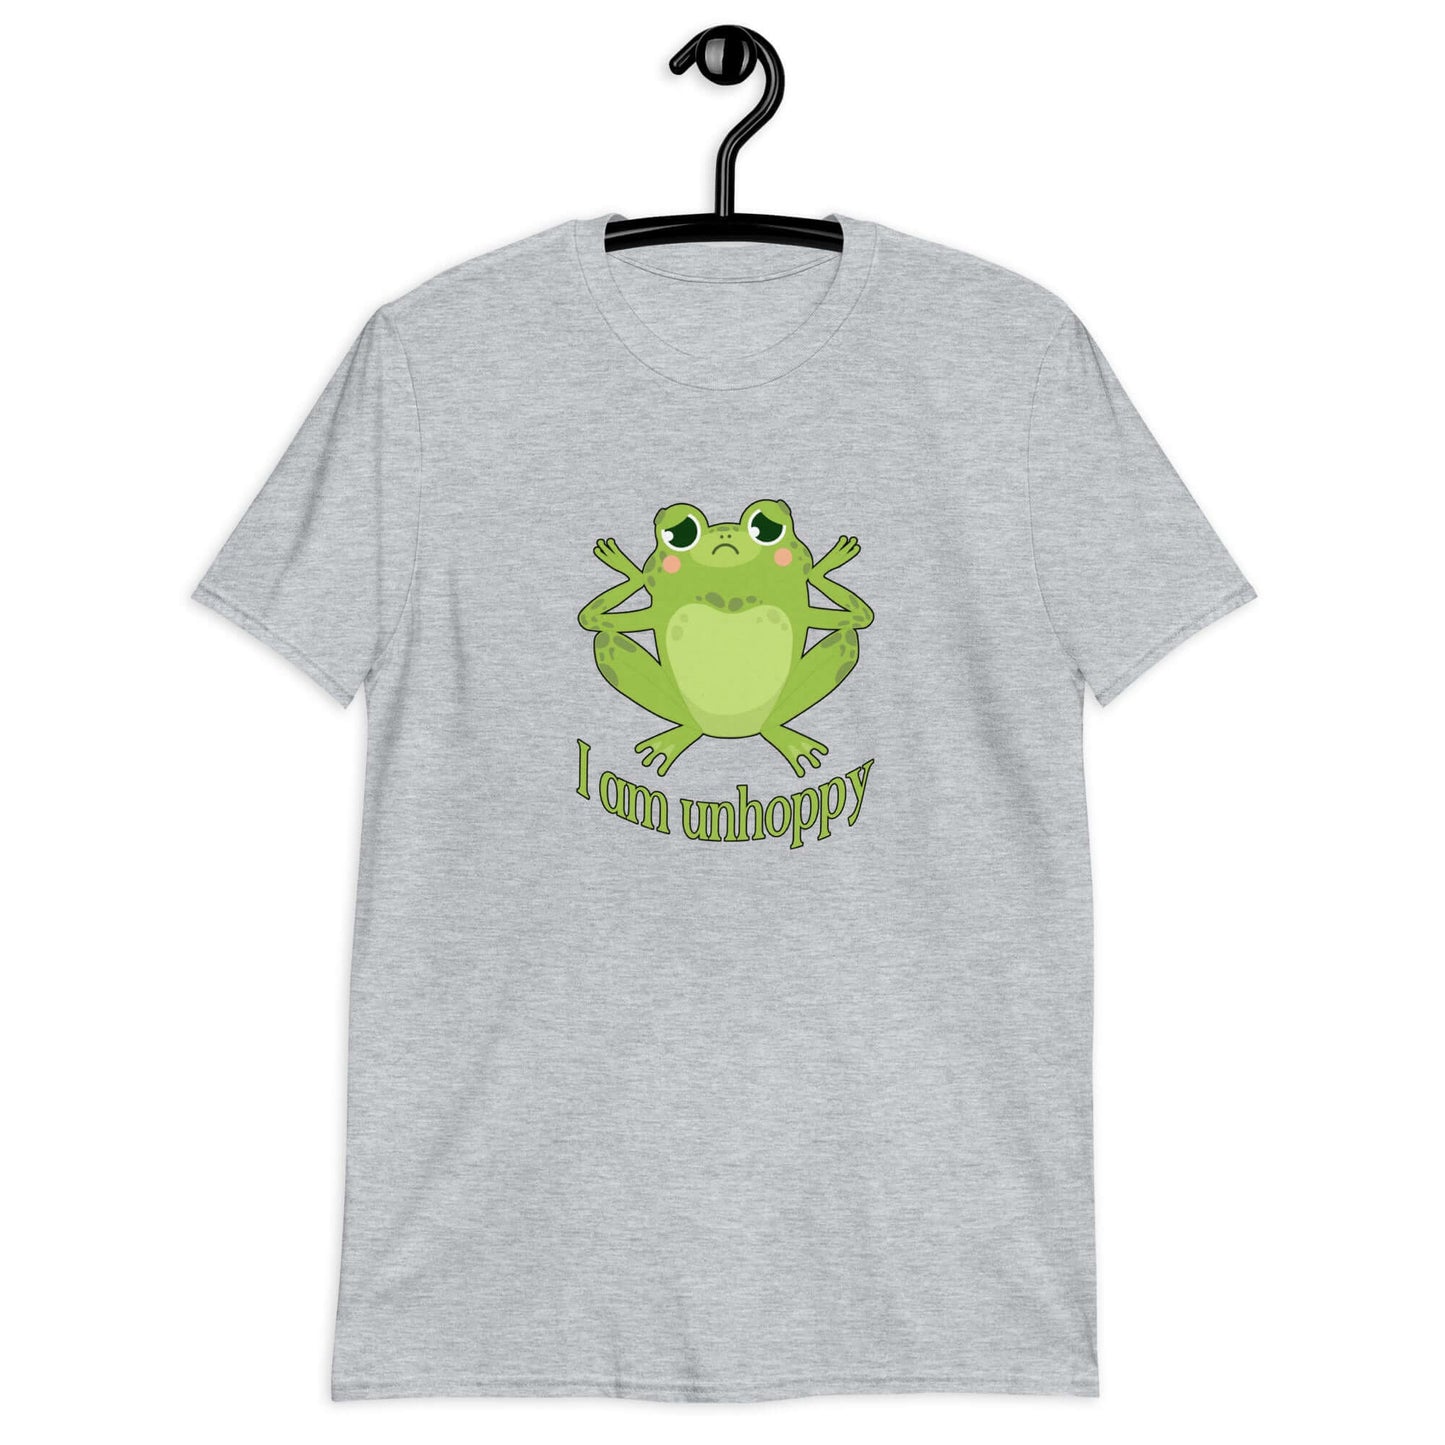 Sad frog unhappy pun T-shirt